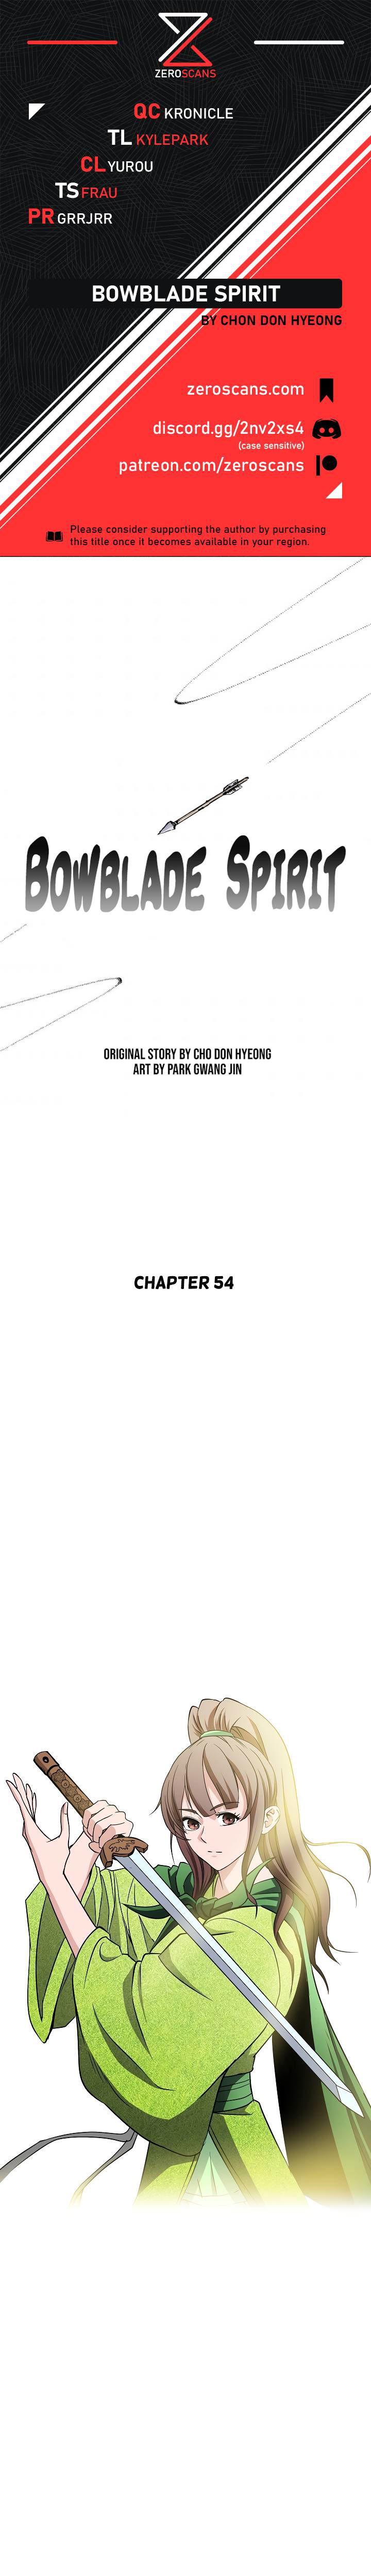 Bowblade Spirit Chapter 54 page 1